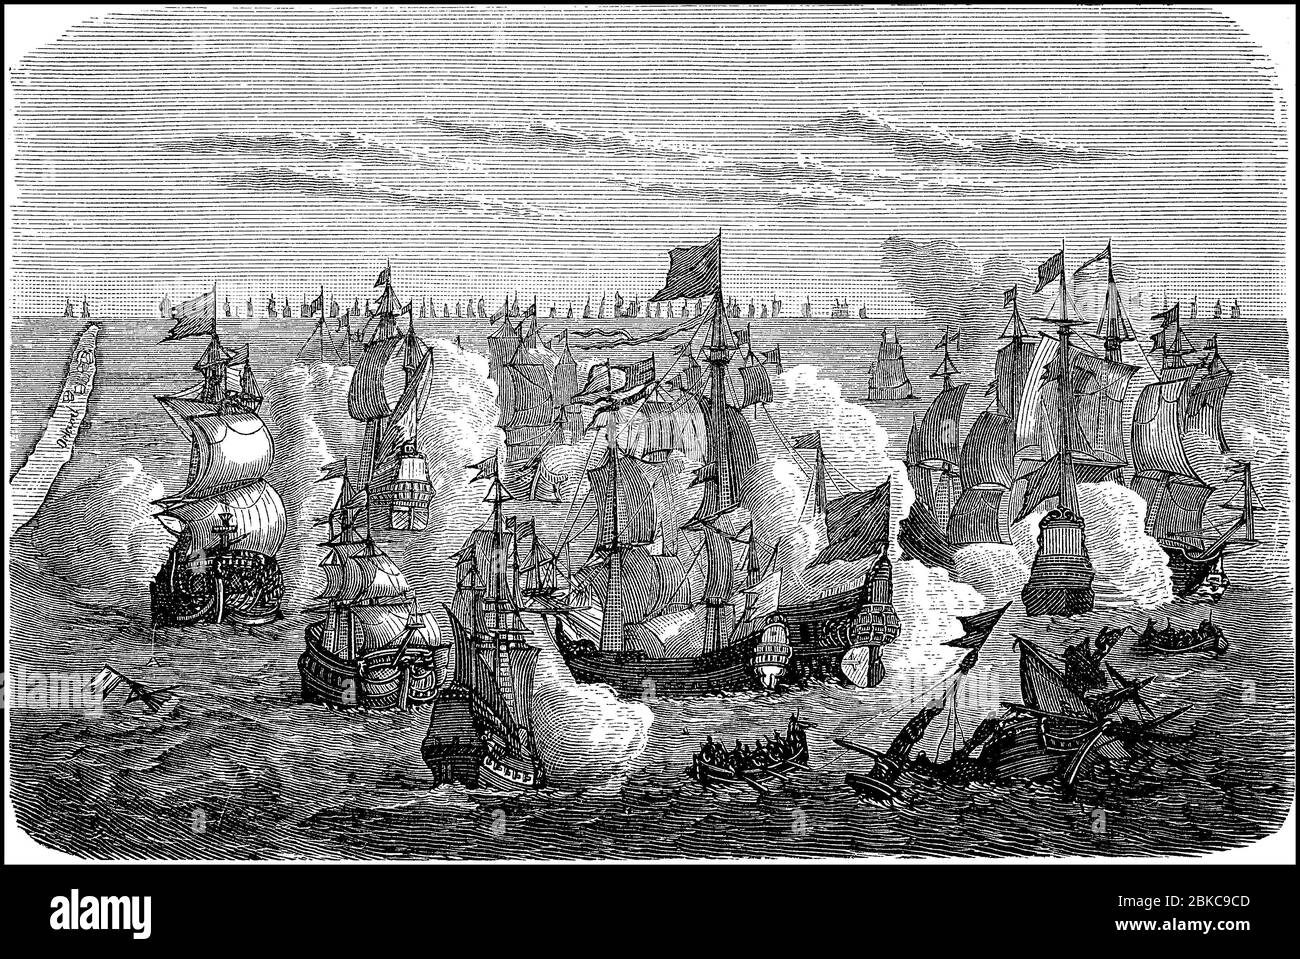 Collision de la flotte Luebeck-danoise contre les Suédois entre Öland et Gotland, guerre Suède-Danemark, Nord de sept ans 'Guerre, également connue sous le nom de Nordic Seven Yearss' War / Kampf der lübisch-dänischen Flotte gegen die Schweden zwischen Öland und Gotland, Schwedisch-dänischer Krieg, Dreikronzeikrich, Hehner, Siekrichner, Siechrichner, Grächner, Grüchner, Grüner, Grüner, Grüner, Grüner, Grüner Amélioration de la reproduction numérique d'un original du XIXe siècle / digitale Reproduktion einer Originalvorlage aus dem 19. Jahrhundert Banque D'Images